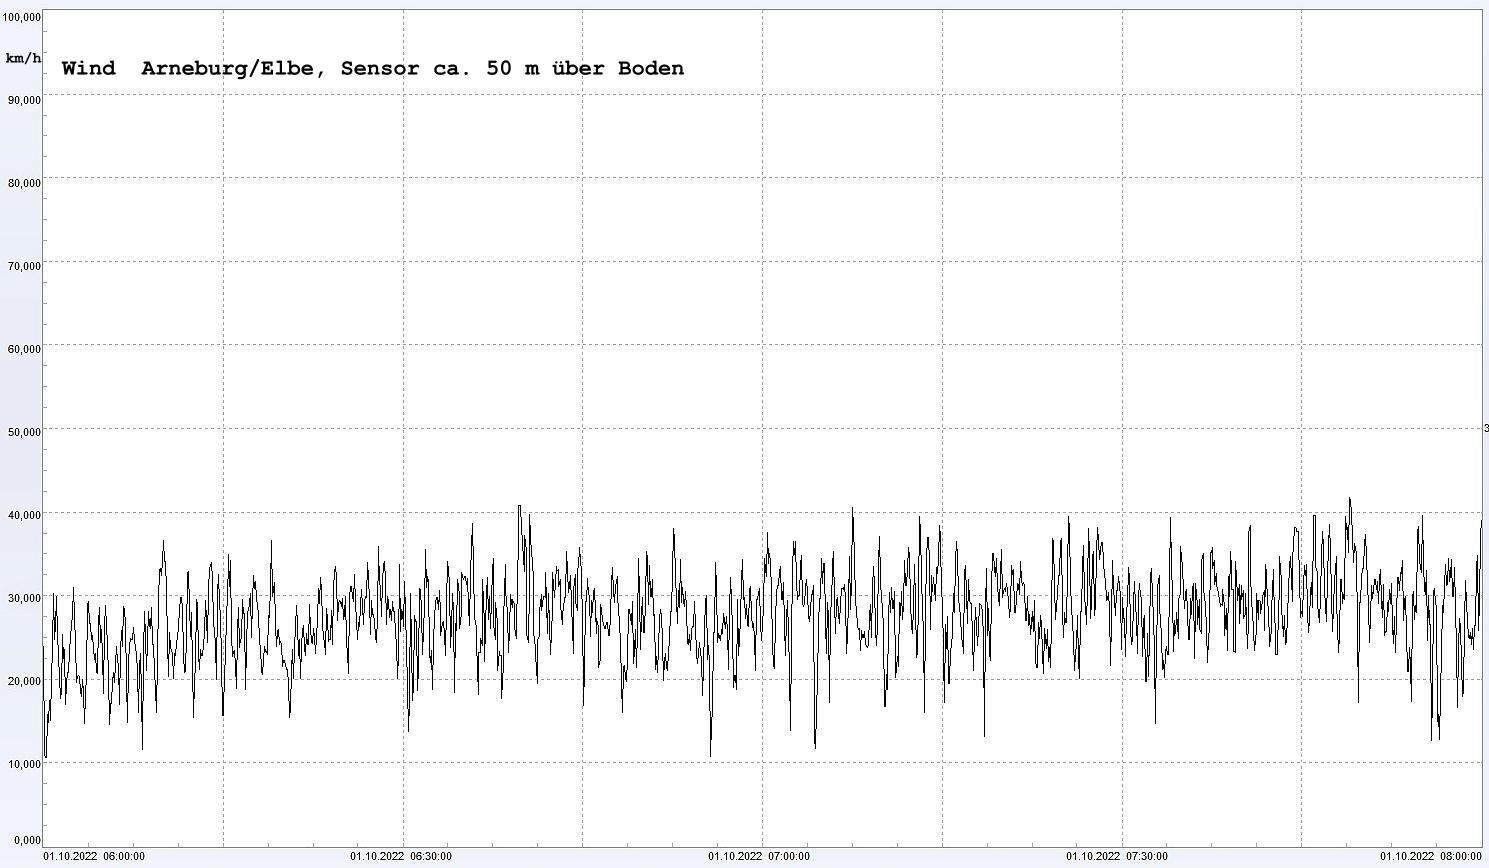 Arneburg Winddaten 01. Oktober 2022, ab 06:00 Uhr, 2 Stunden
  Sensor auf Gebude, ca. 50 m ber Erdboden, 5s-Aufzeichnung